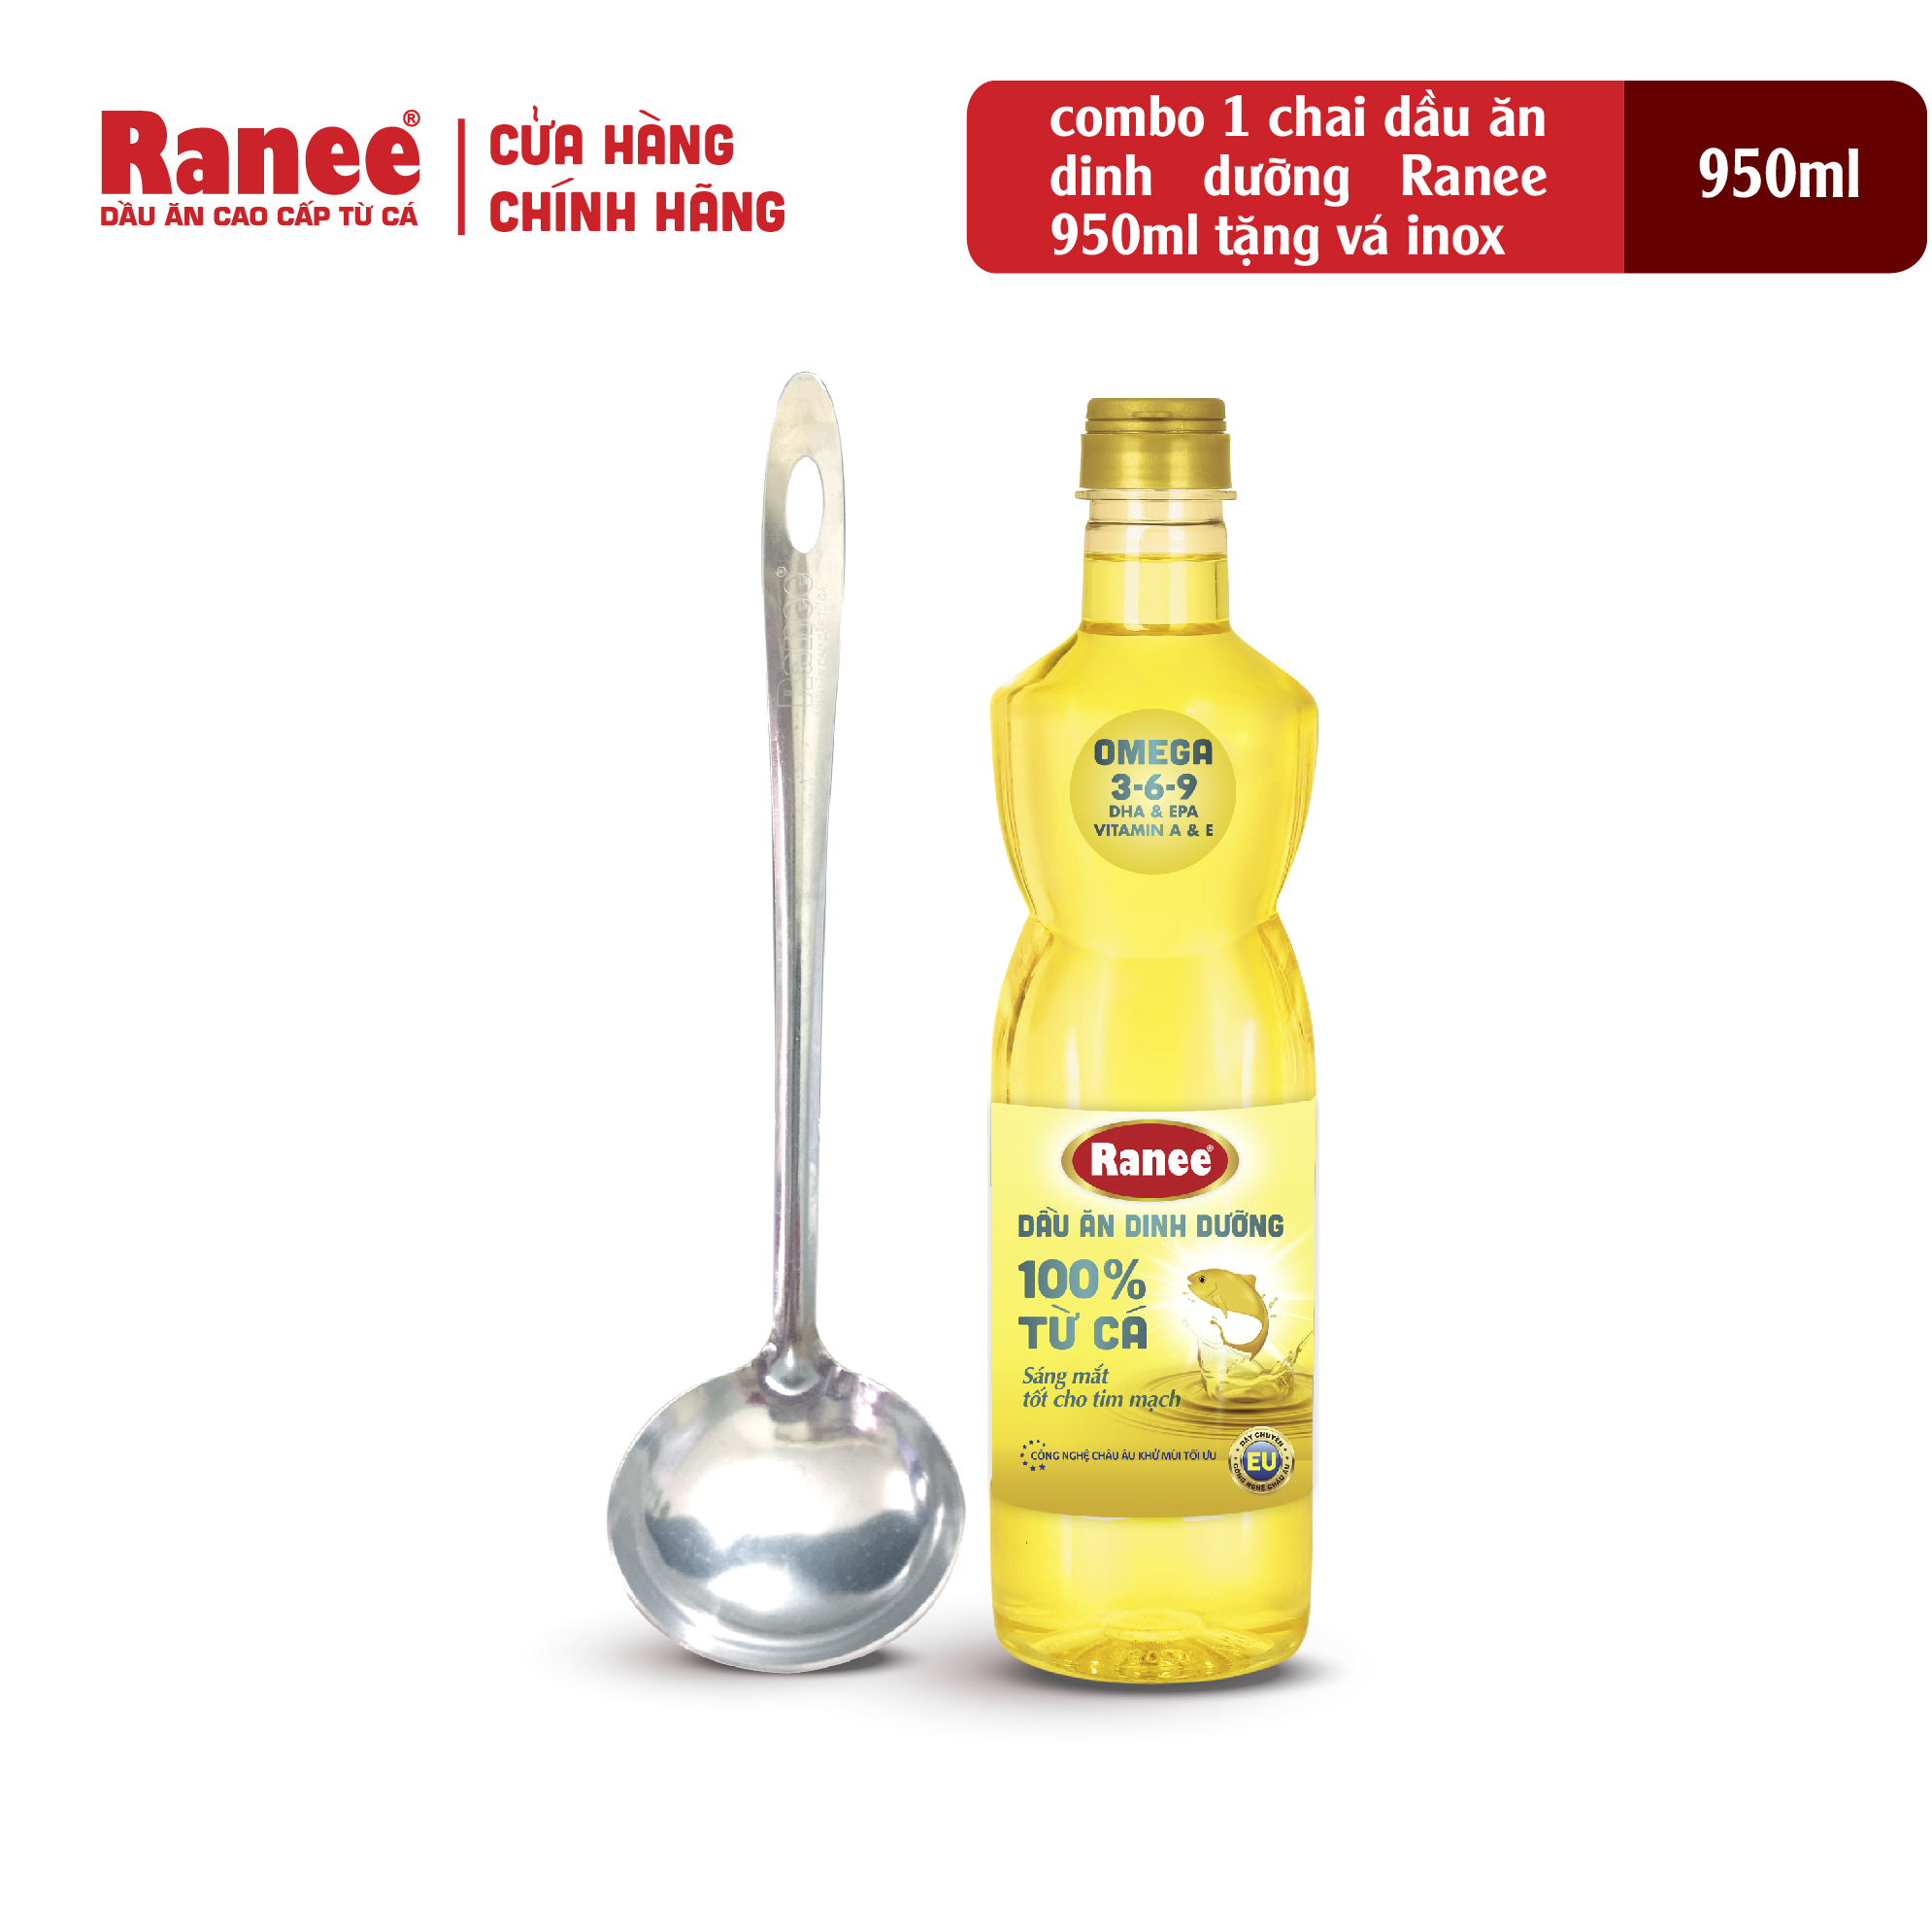 Combo 1 chai dầu ăn dinh dưỡng Ranee 950ml tặng kèm vá inox